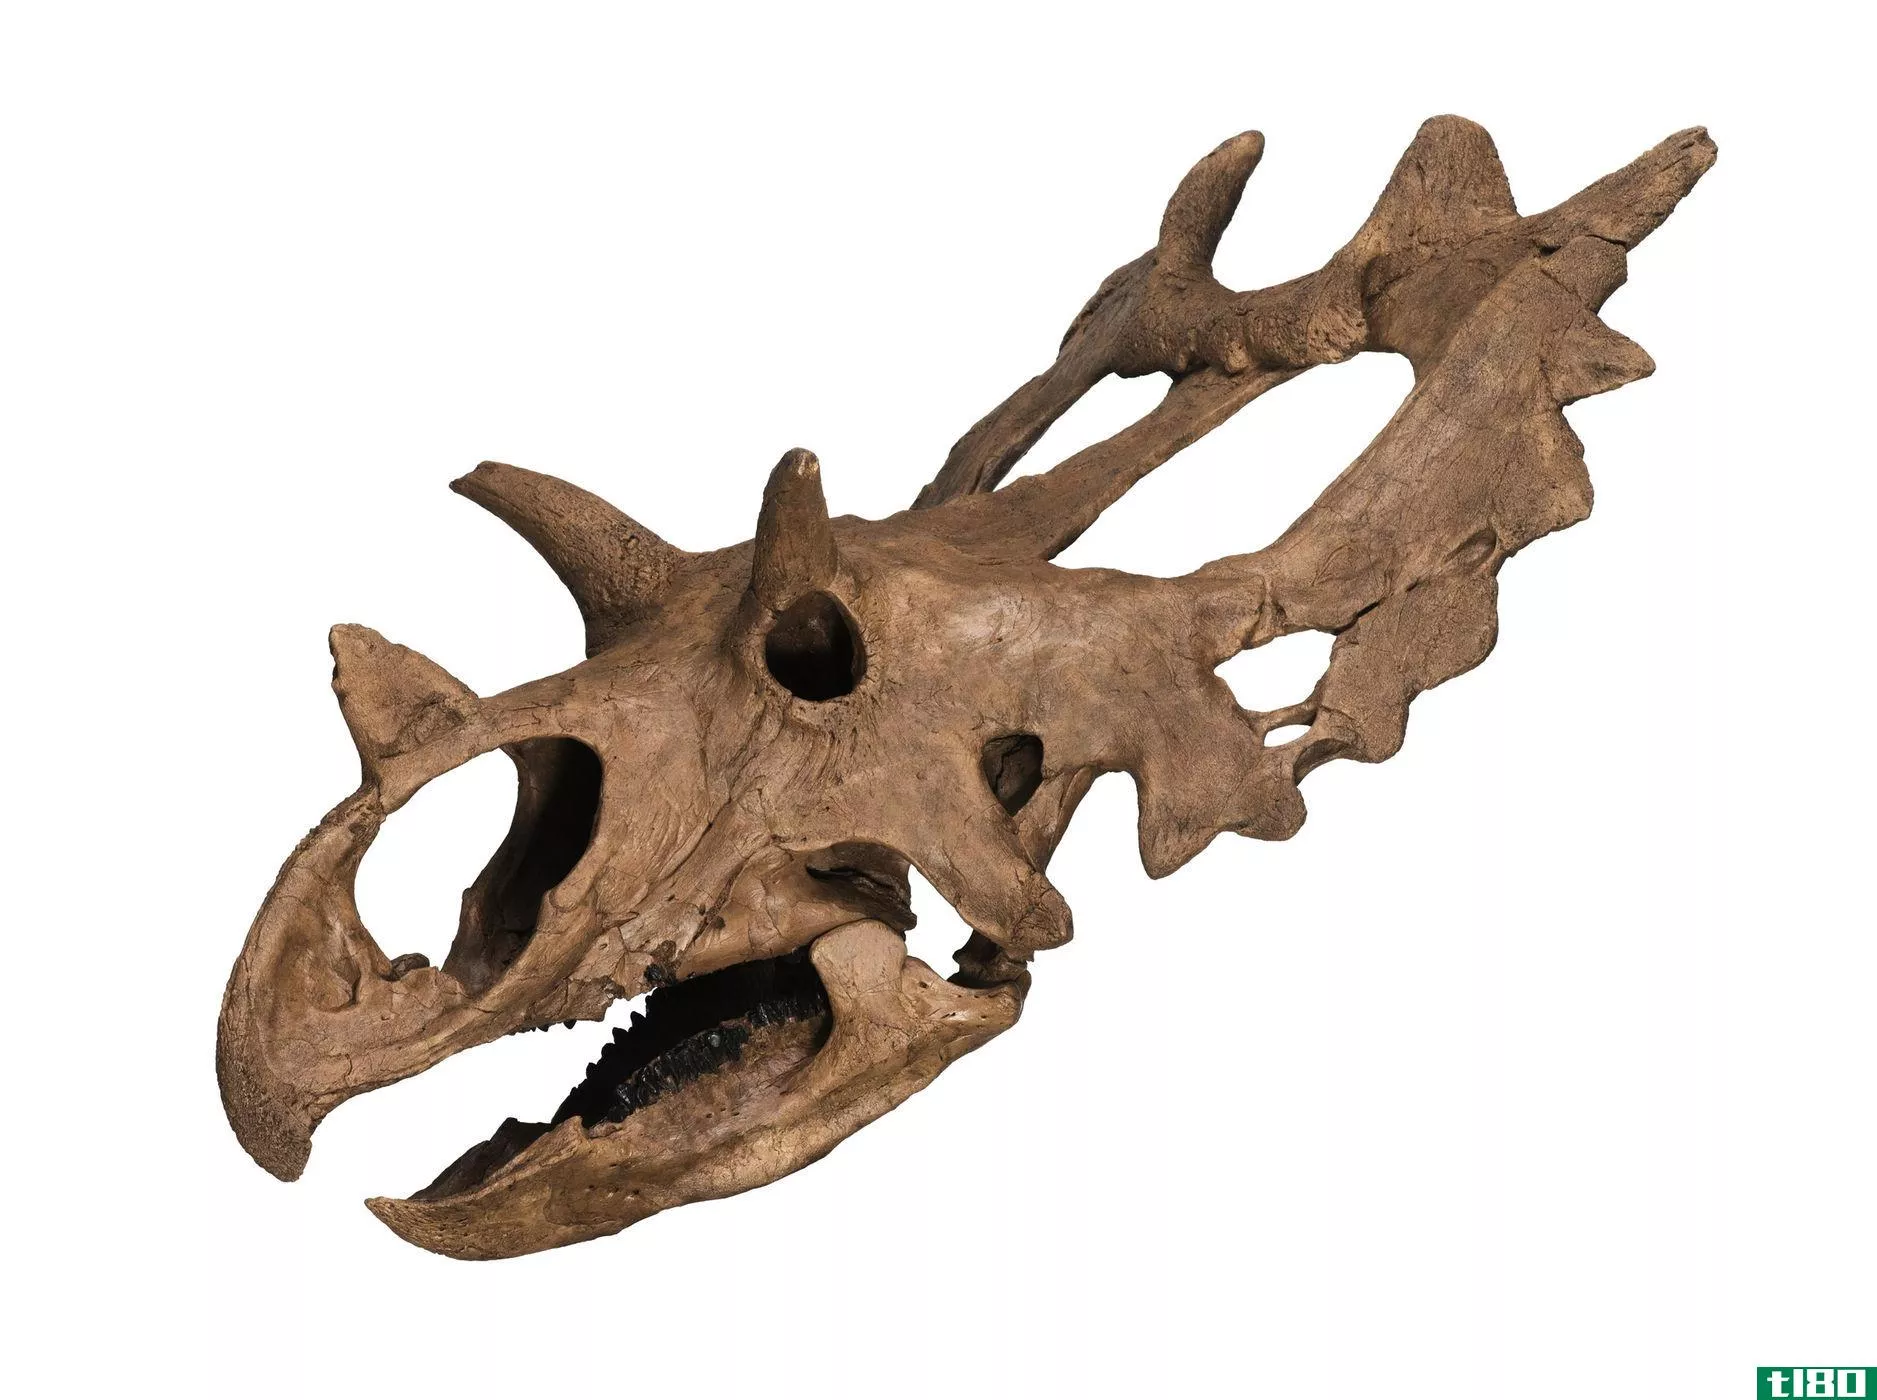 业余化石猎人发现了一种名为朱迪思的卷颈恐龙